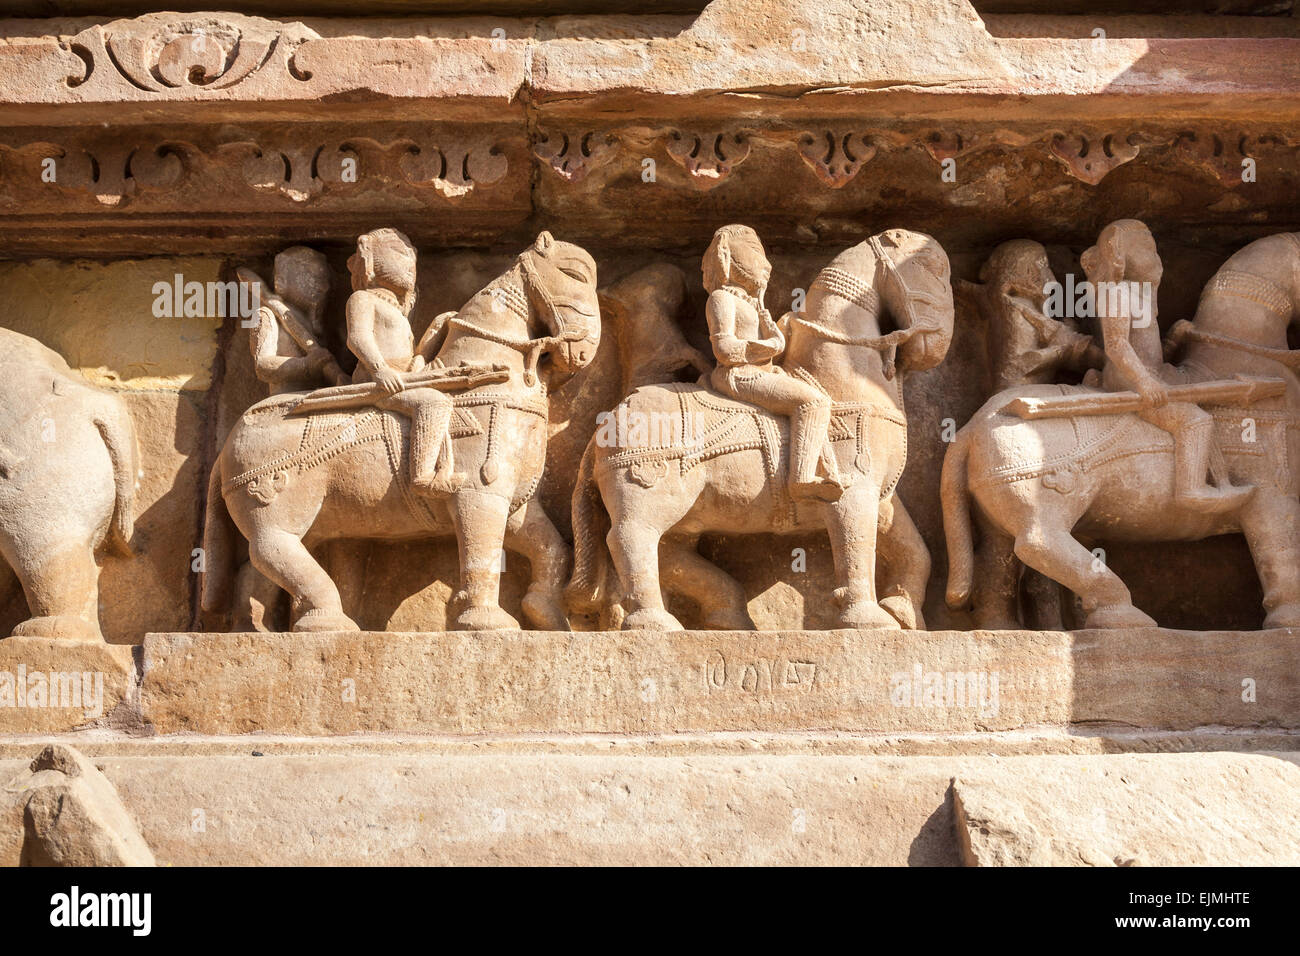 Carvings at a Hindu temple in the Western Group at Khajuraho, Madhya Pradesh, India depicting mounted warriors on horseback Stock Photo